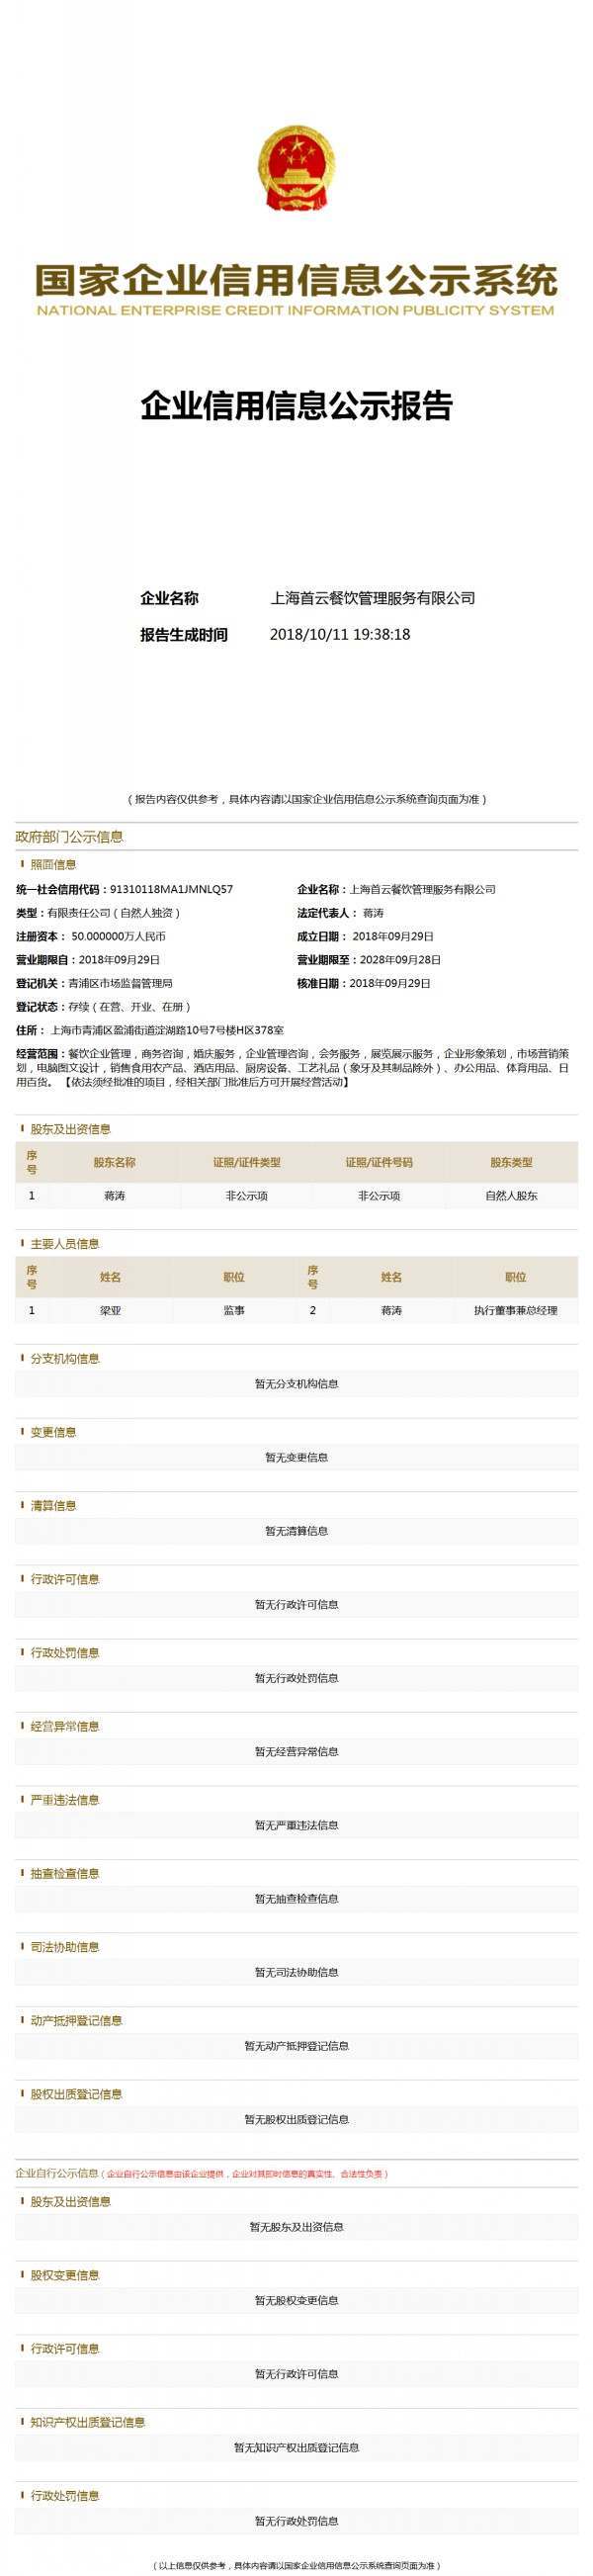 conew_上海首云餐饮管理服务有限公司 (1)